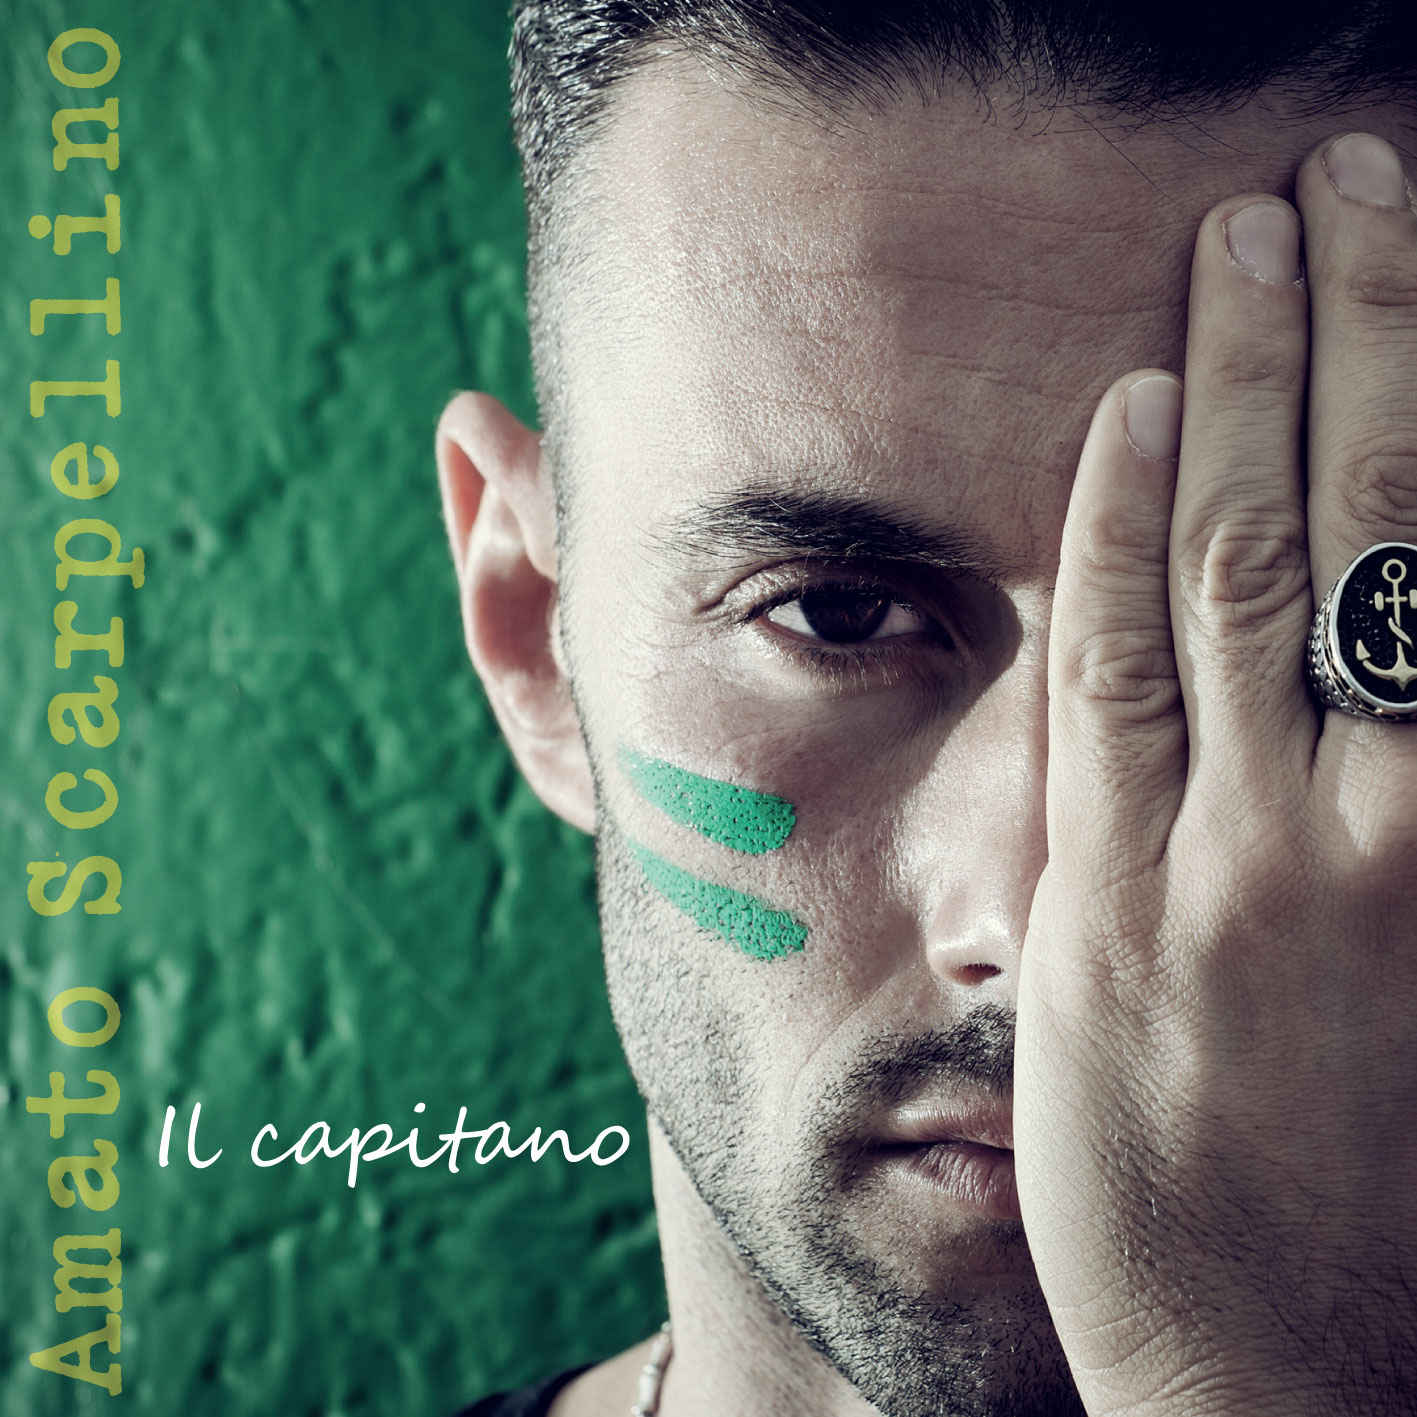 Amato Scarpellino: “Un capitano, tanti volti dell’amore”